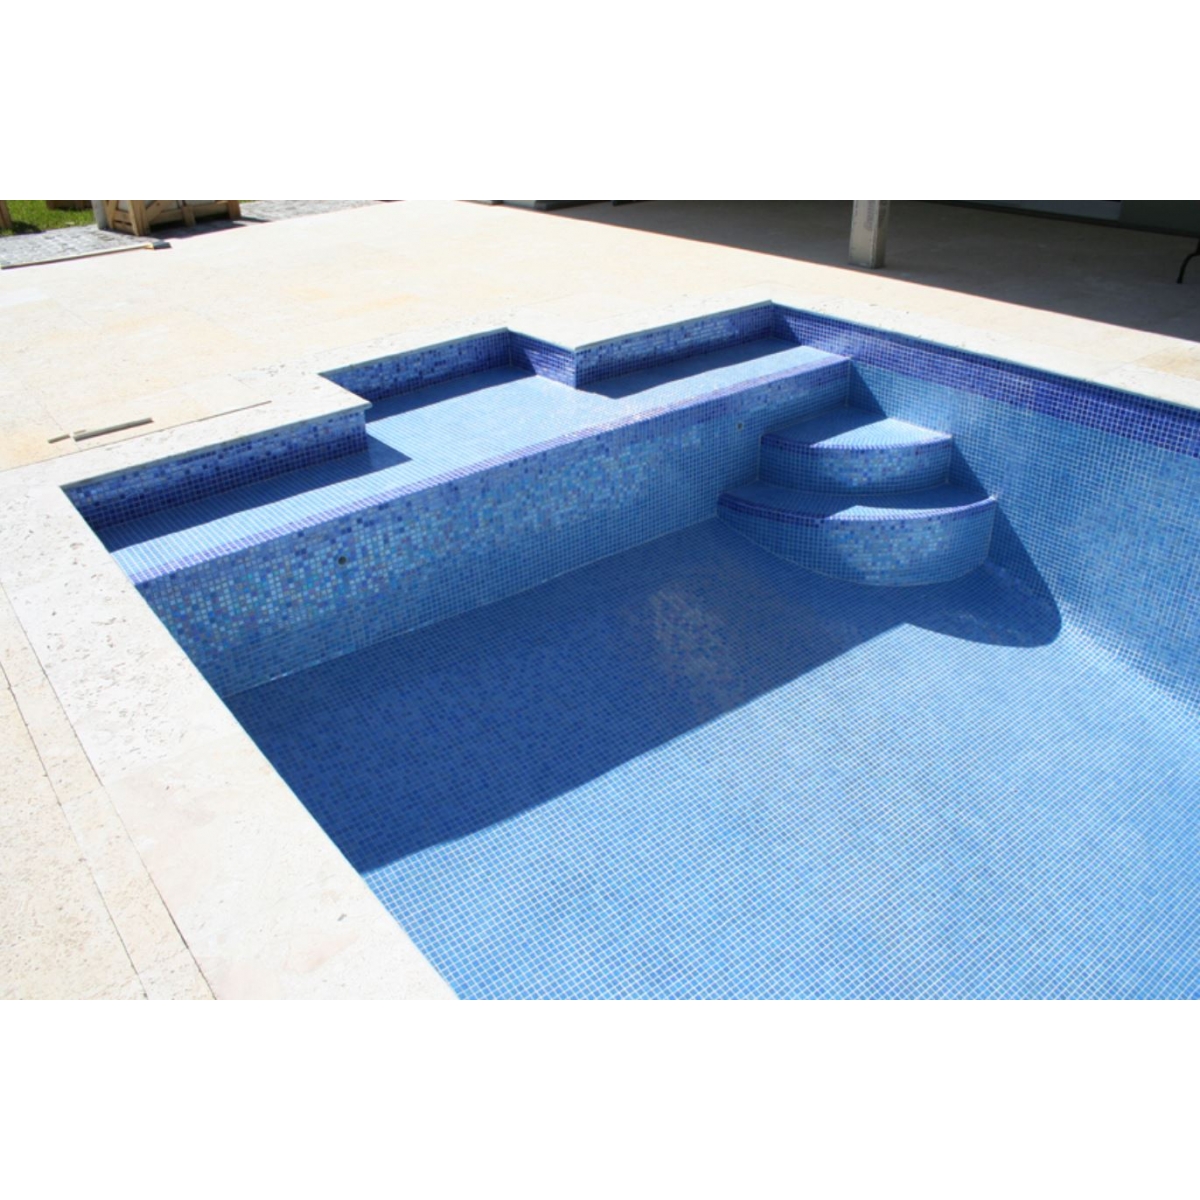 Detalle piscina con revestimiento Gresite colores niebla en azul